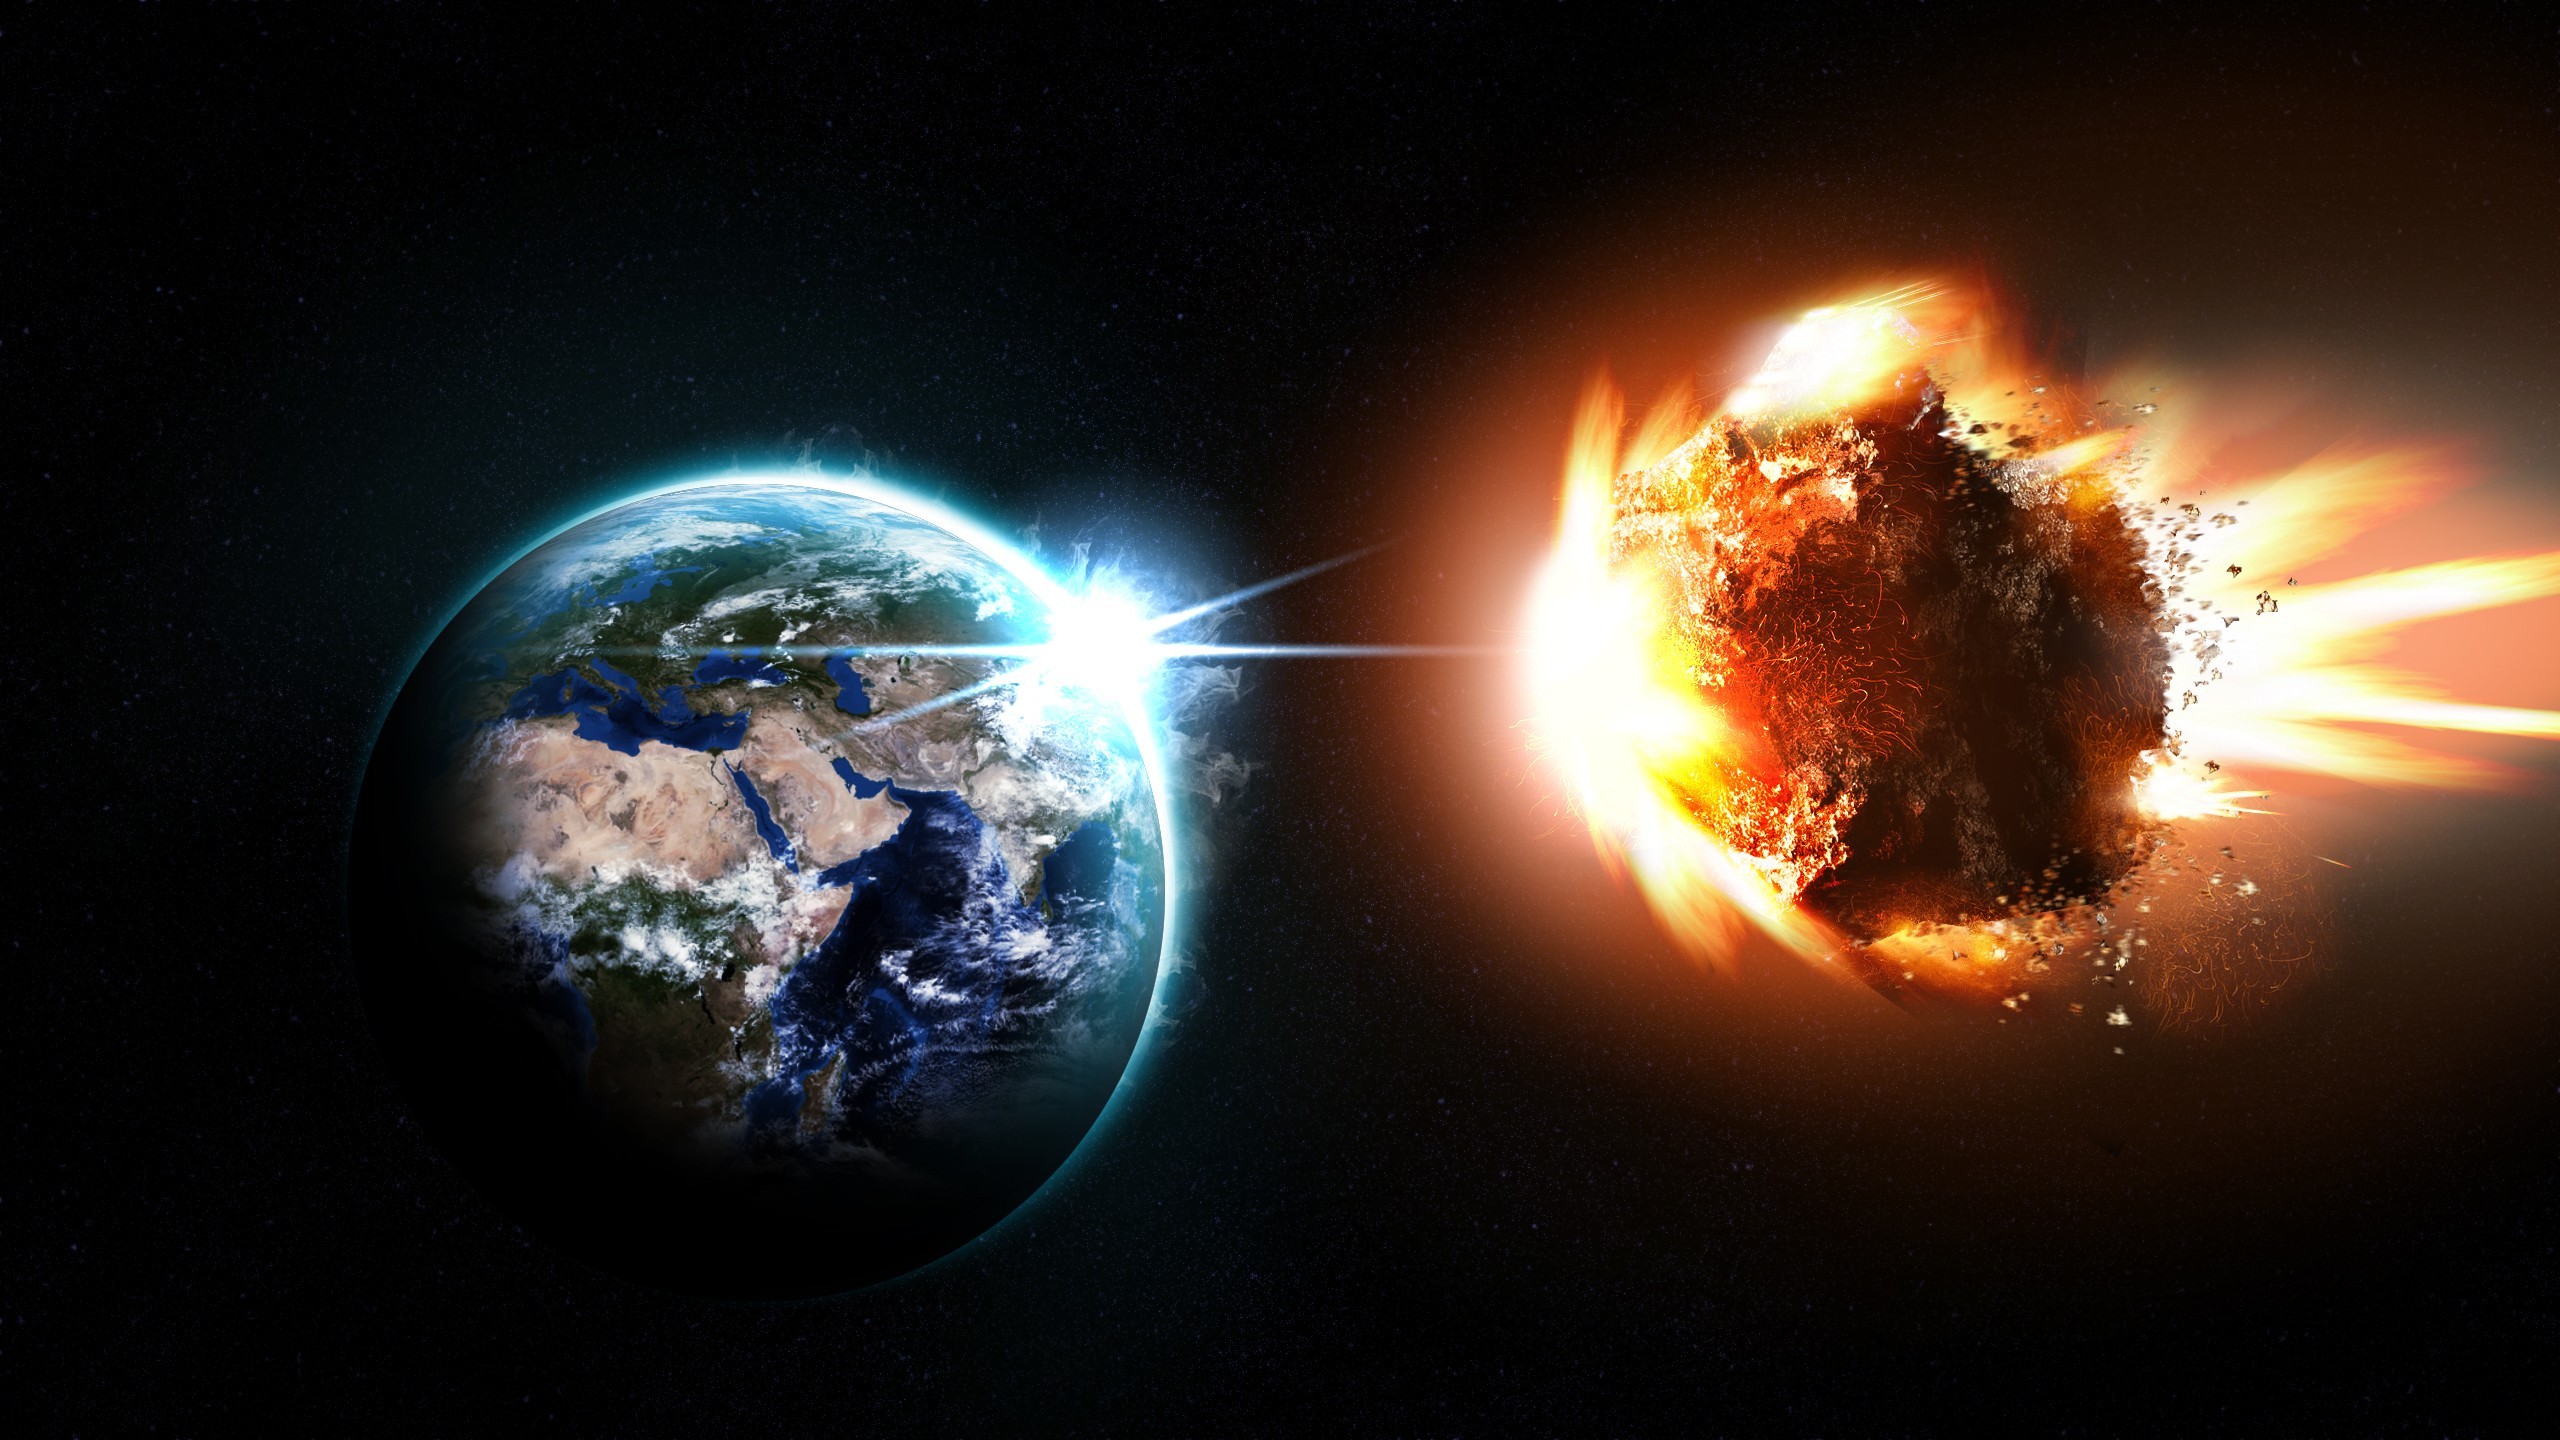 Planet, Meteor Asteroid Comet Blast Space Mac iMac 27